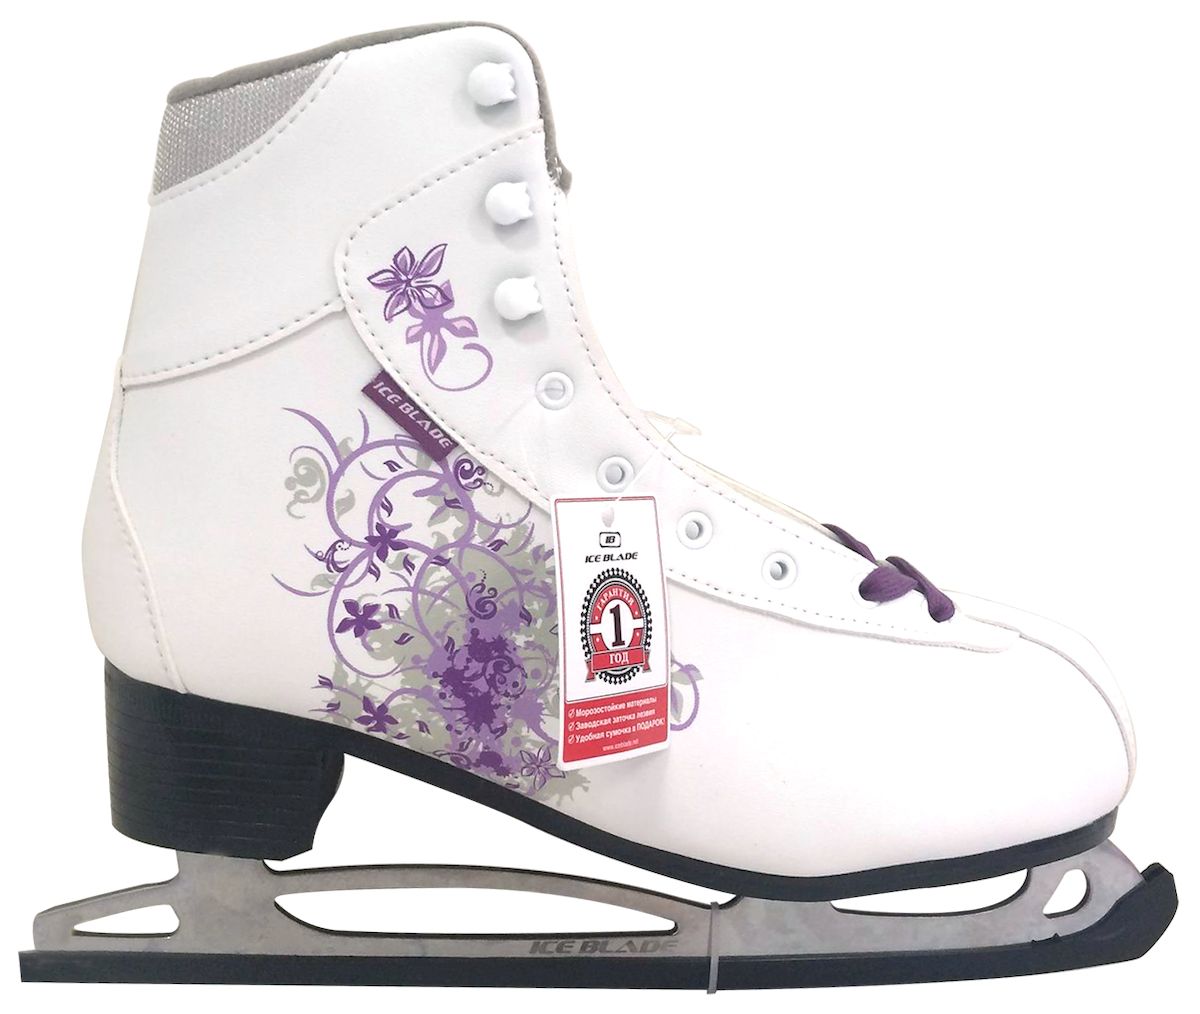 Коньки фигурные Ice Blade Sochi, цвет: белый, фиолетовый. УТ-00004988. Размер 32